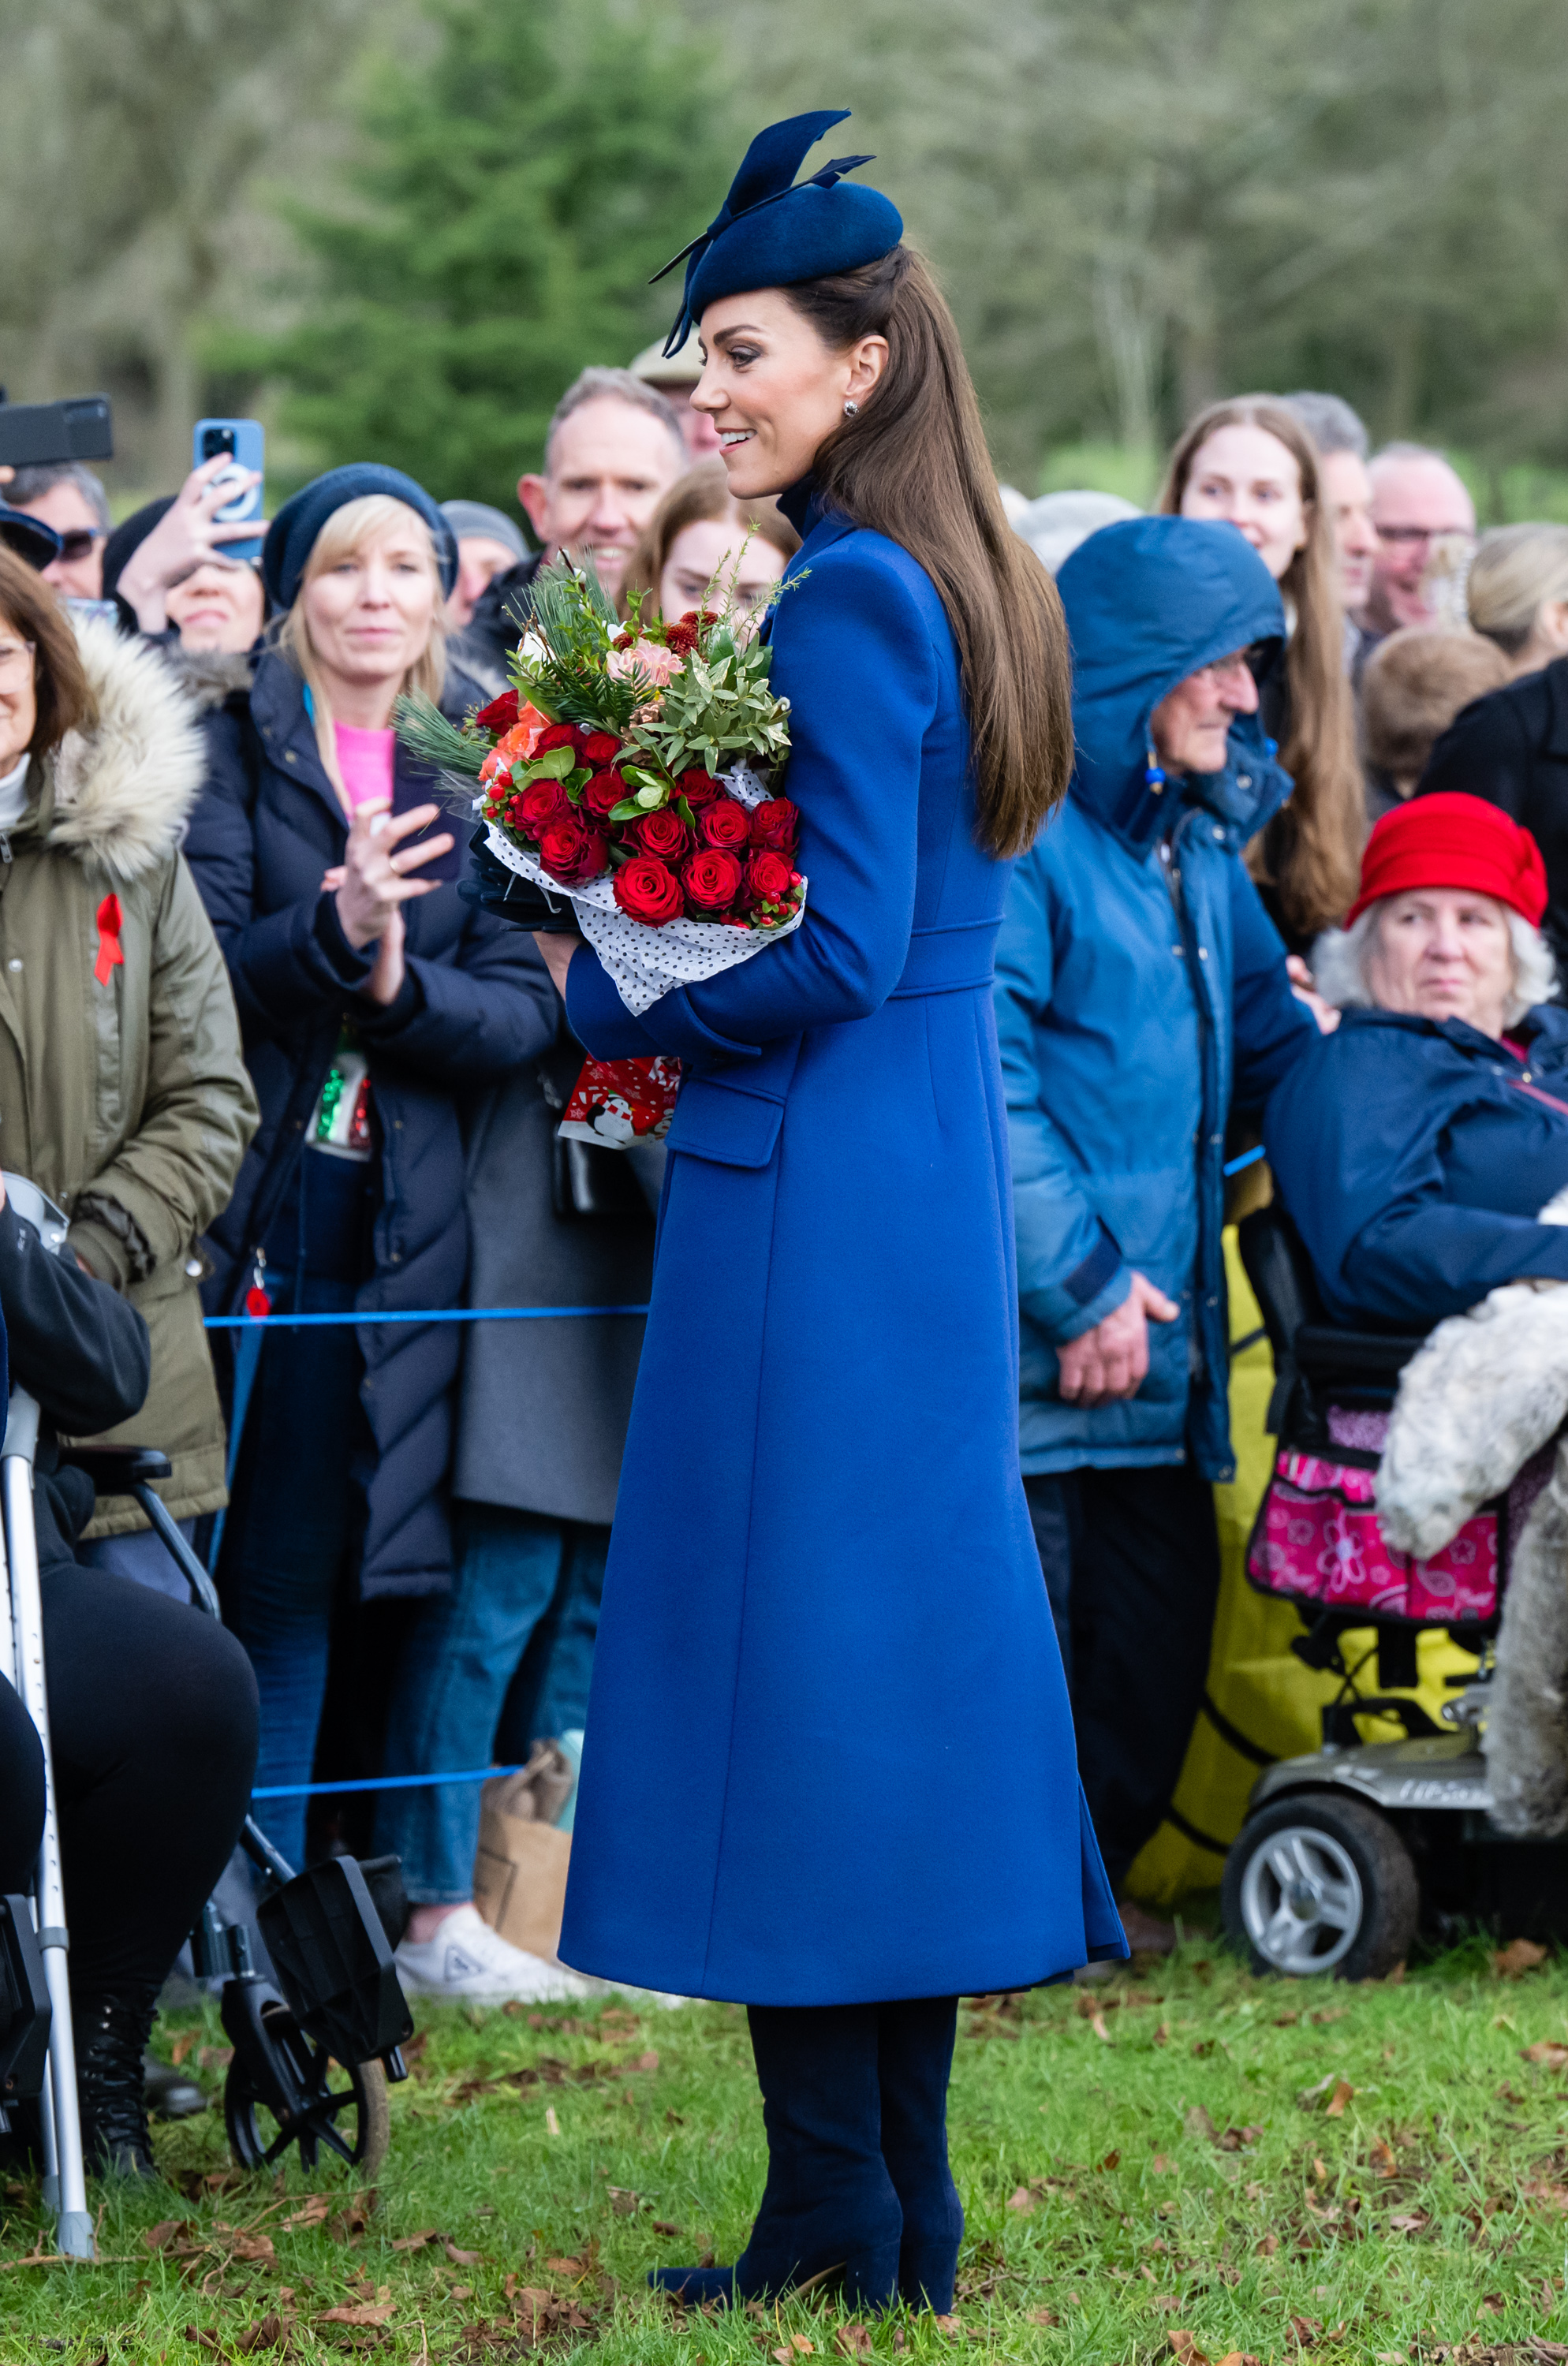 Catherine, Prinzessin von Wales, grüßt die Menge, während sie einen Rosenstrauß auf dem Weg zum Weihnachtsgottesdienst in der St. Mary Magdalene Church am 25. Dezember 2023 in Sandringham, Norfolk trägt | Quelle: Getty Images